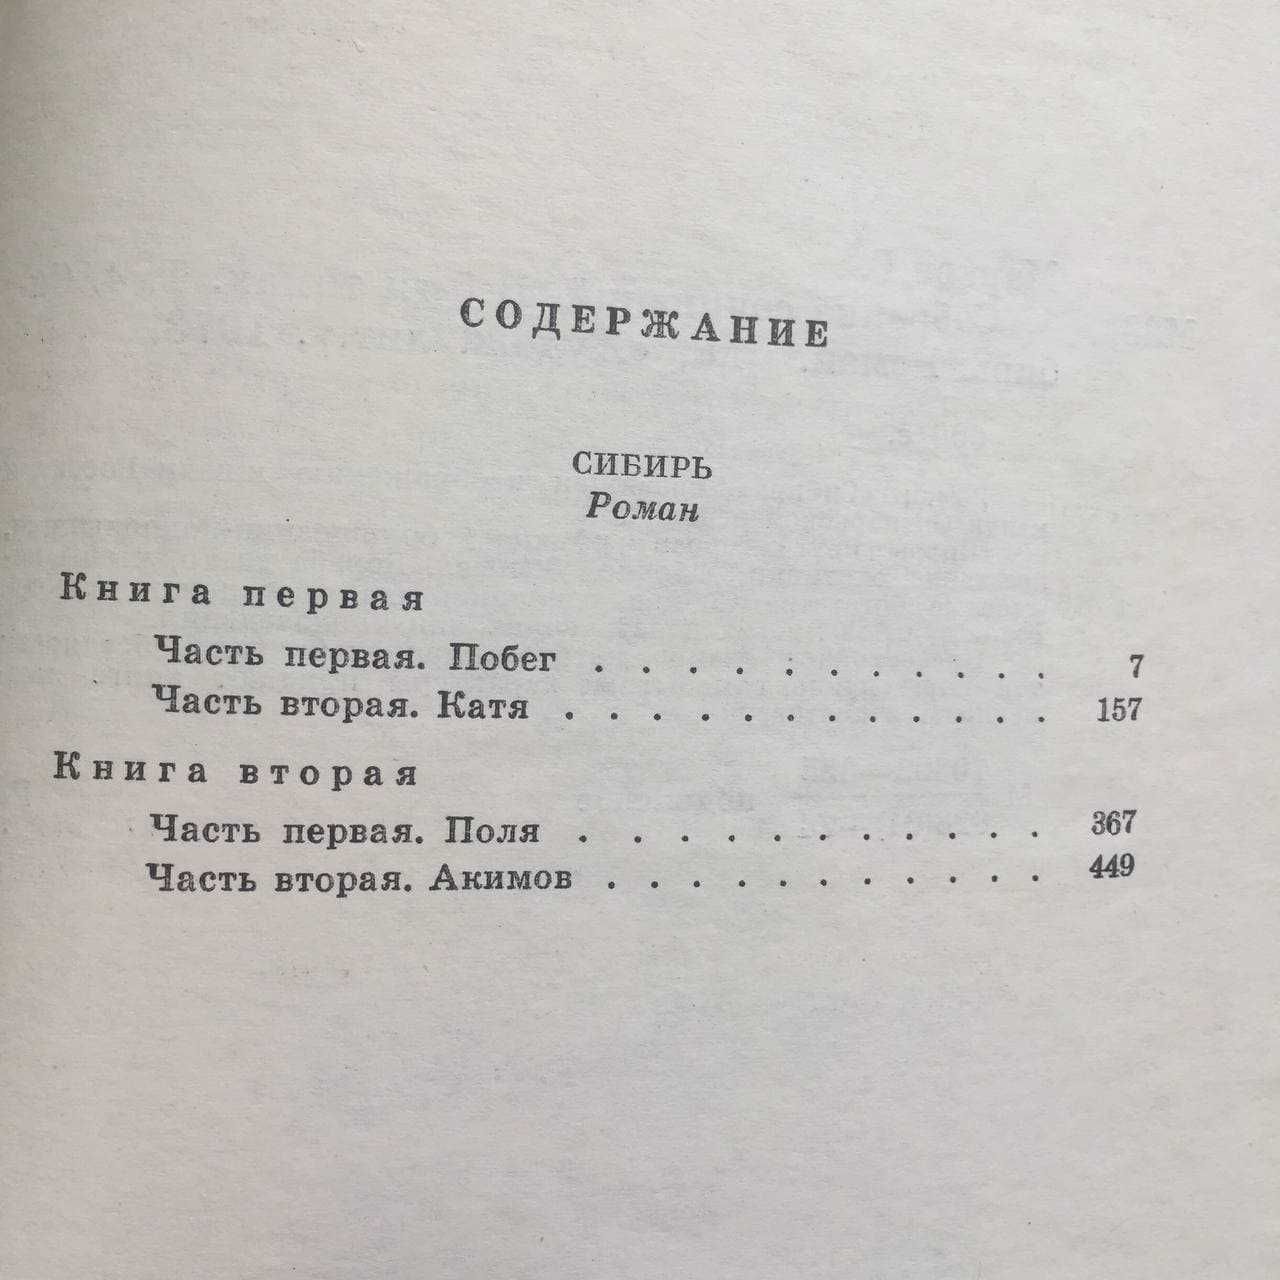 Георгий Марков. Собрание сочинений в 5 томах 1972